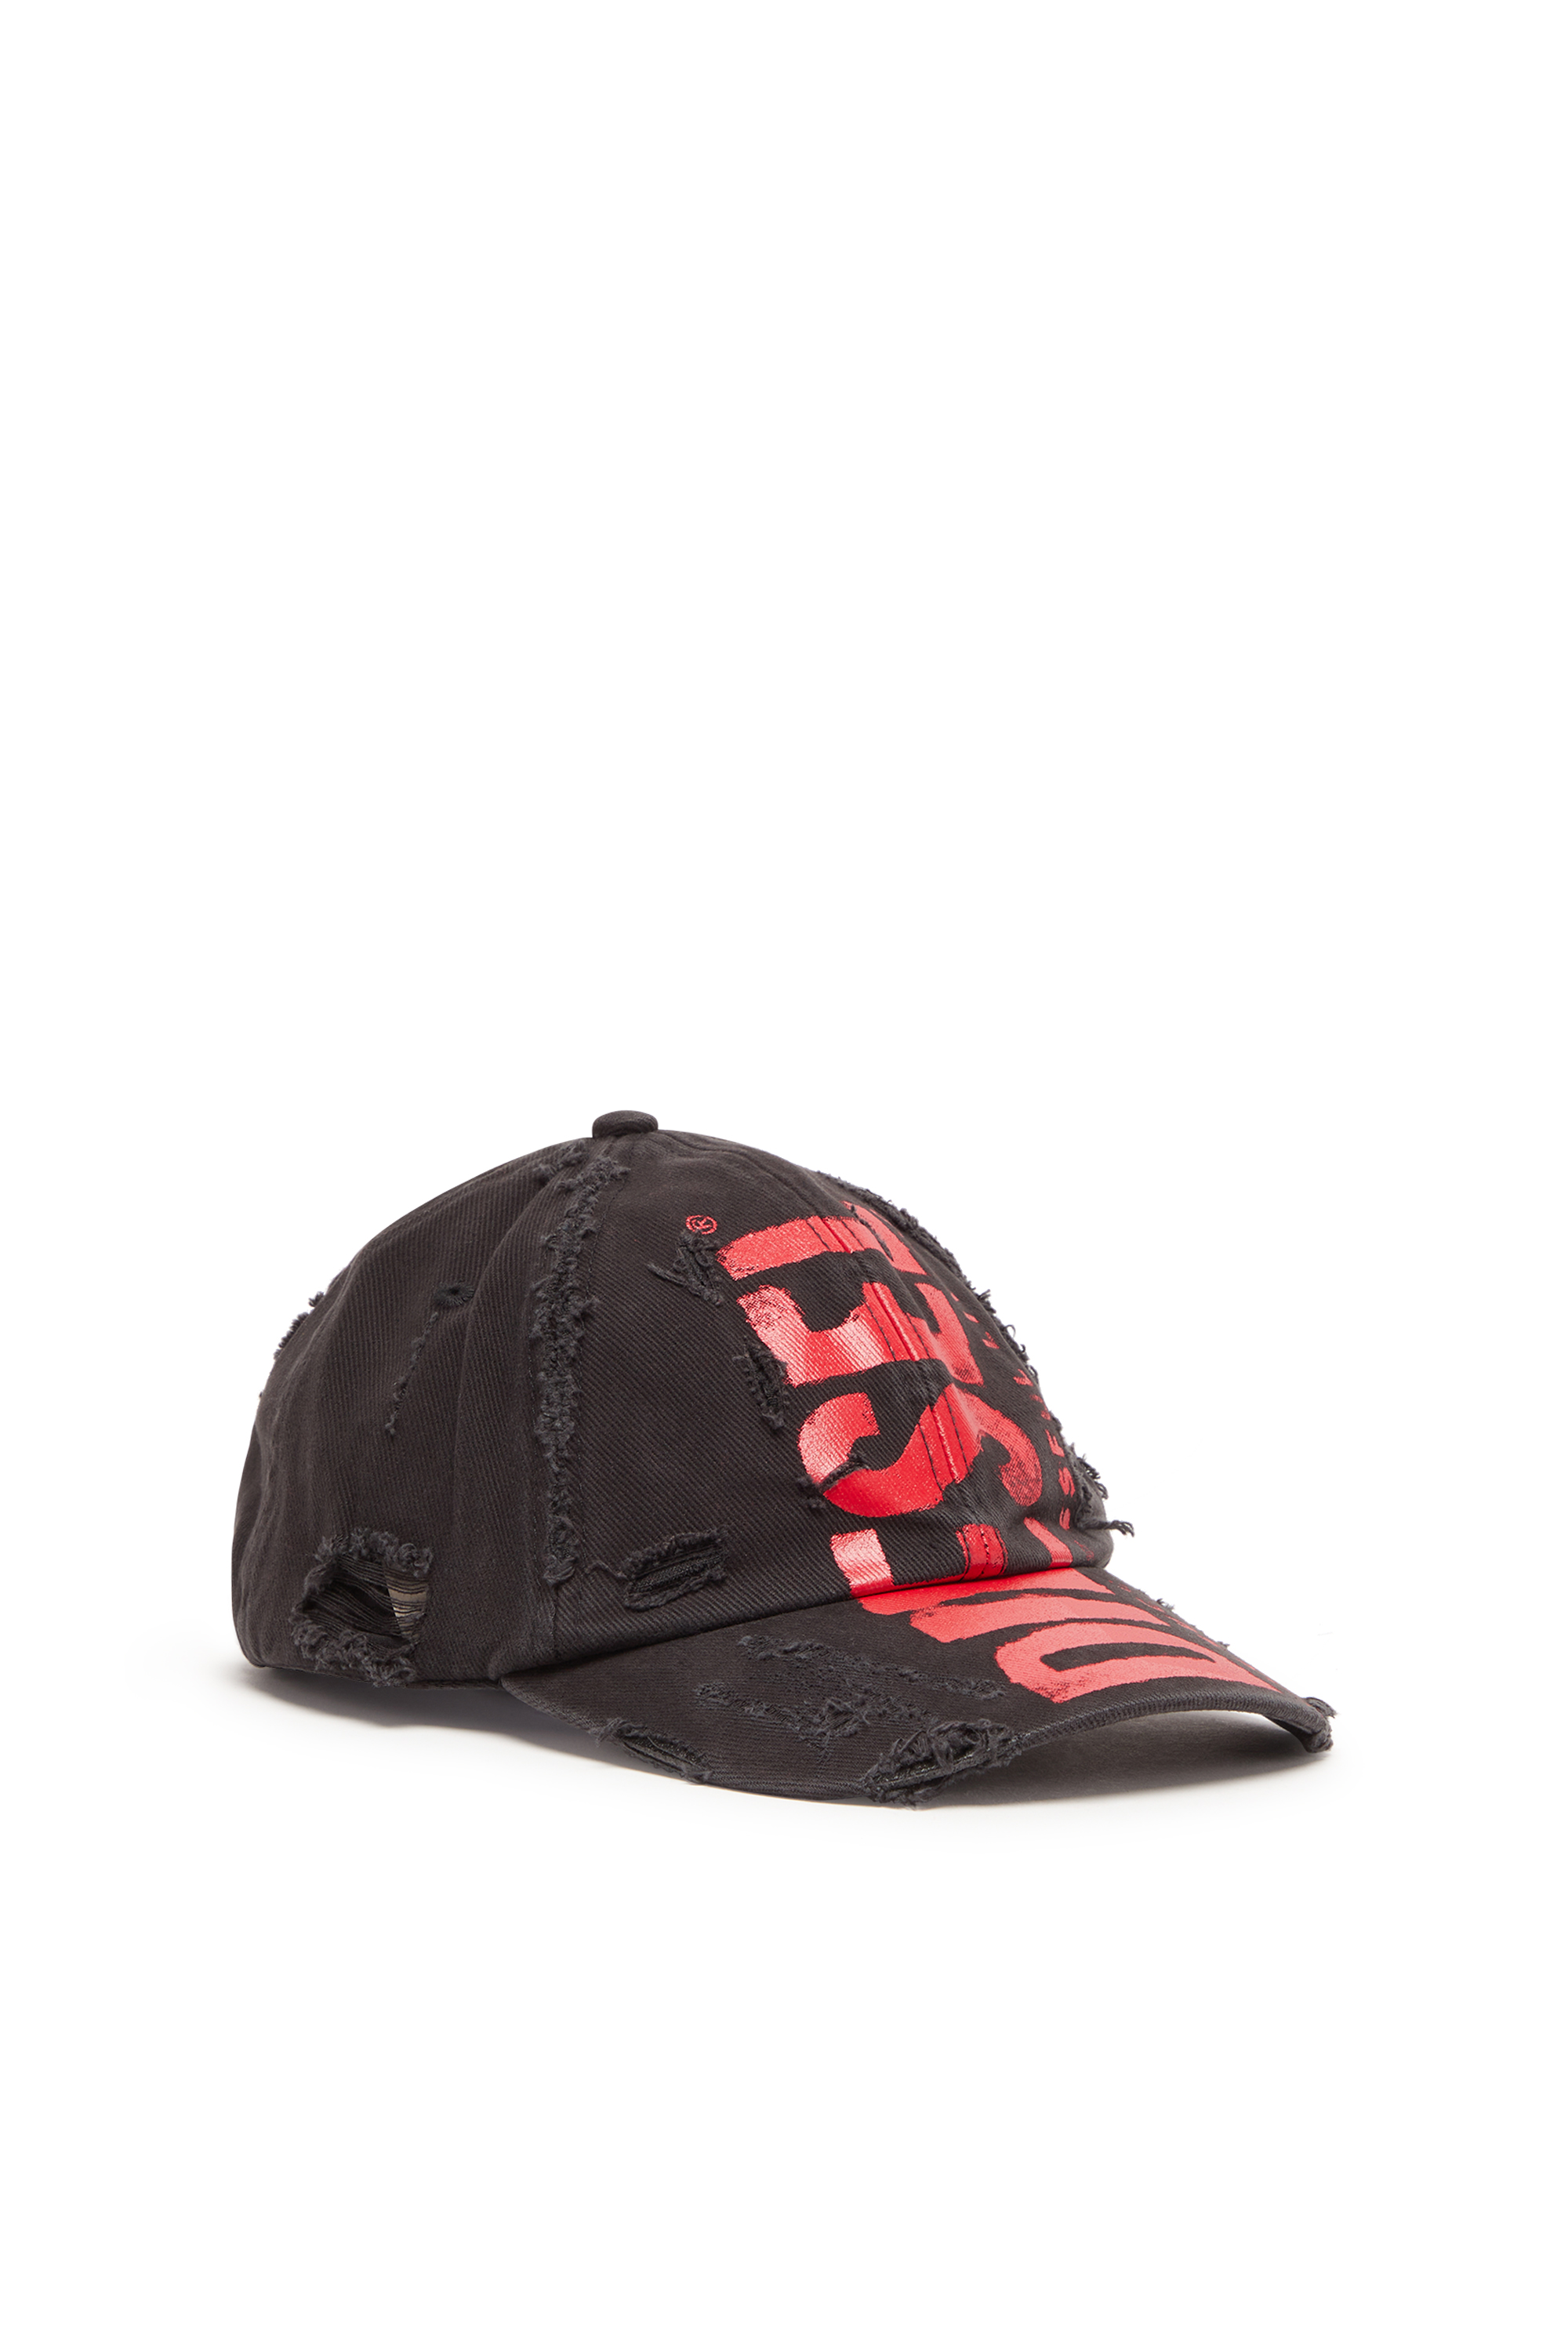 Diesel - Baseball Cap mit Diesel-Schriftzug - Hüte - Unisex - Bunt